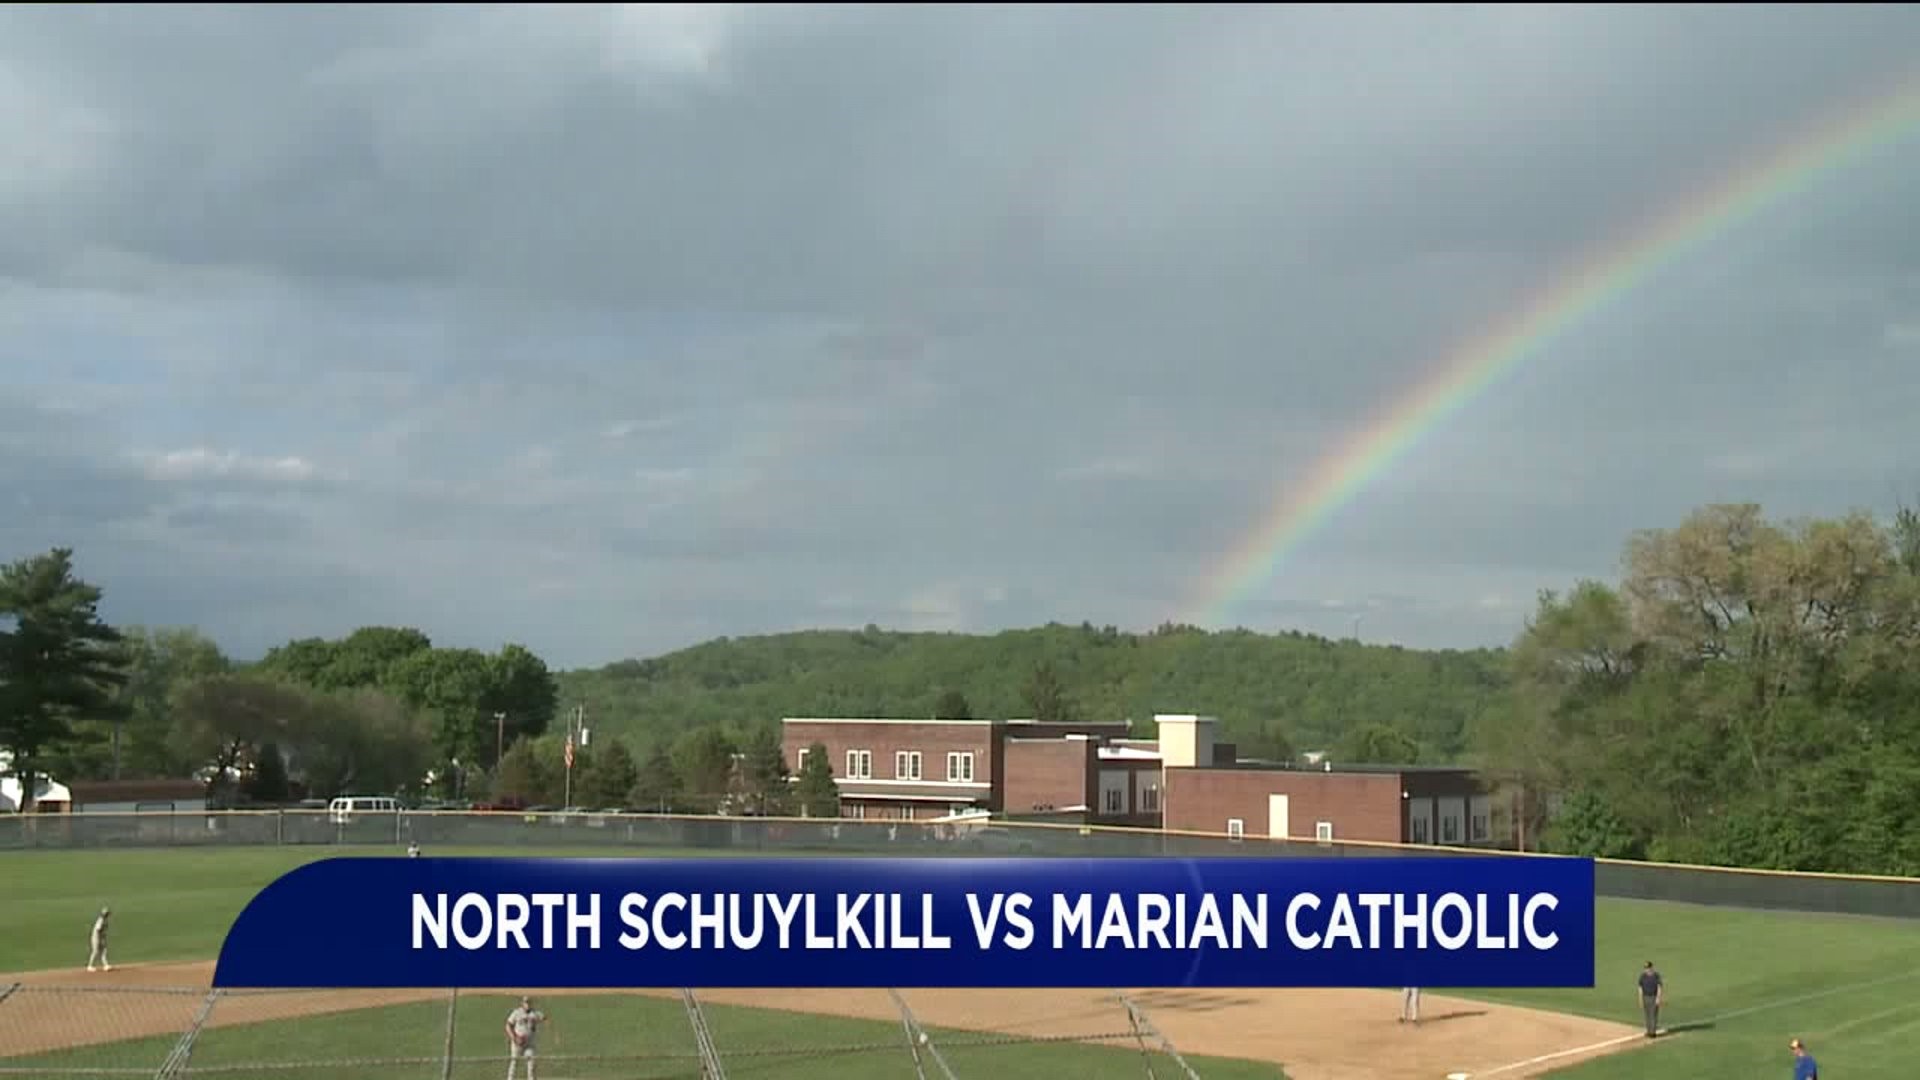 North Schuylkill vs Marian Catholic softball